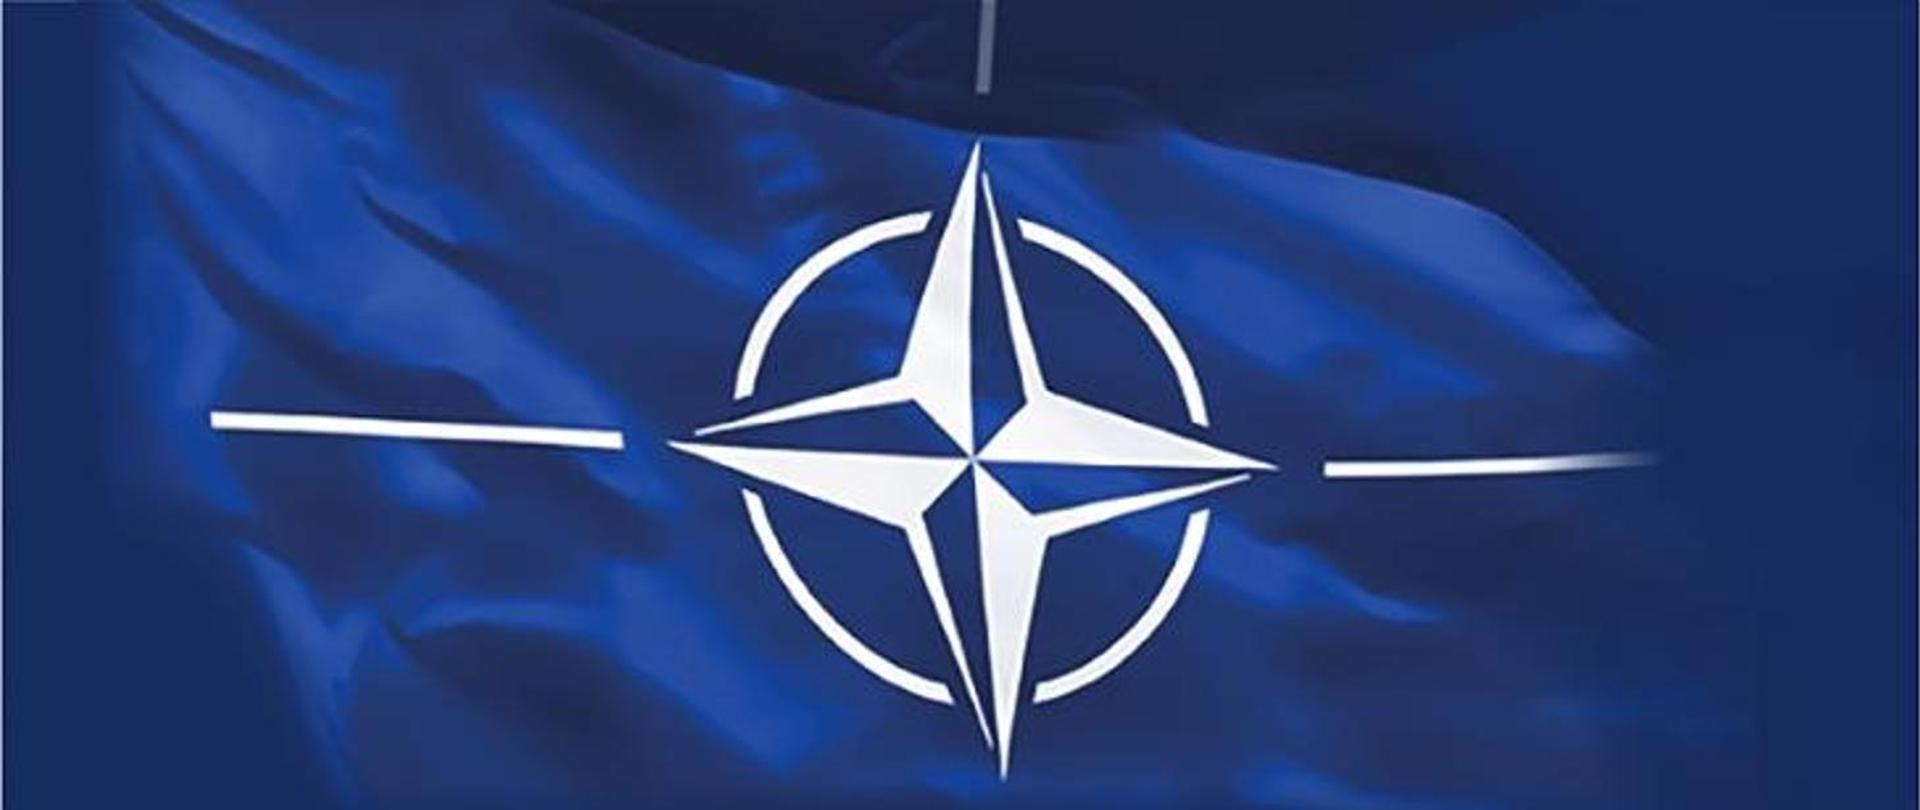 NATO 1 pict